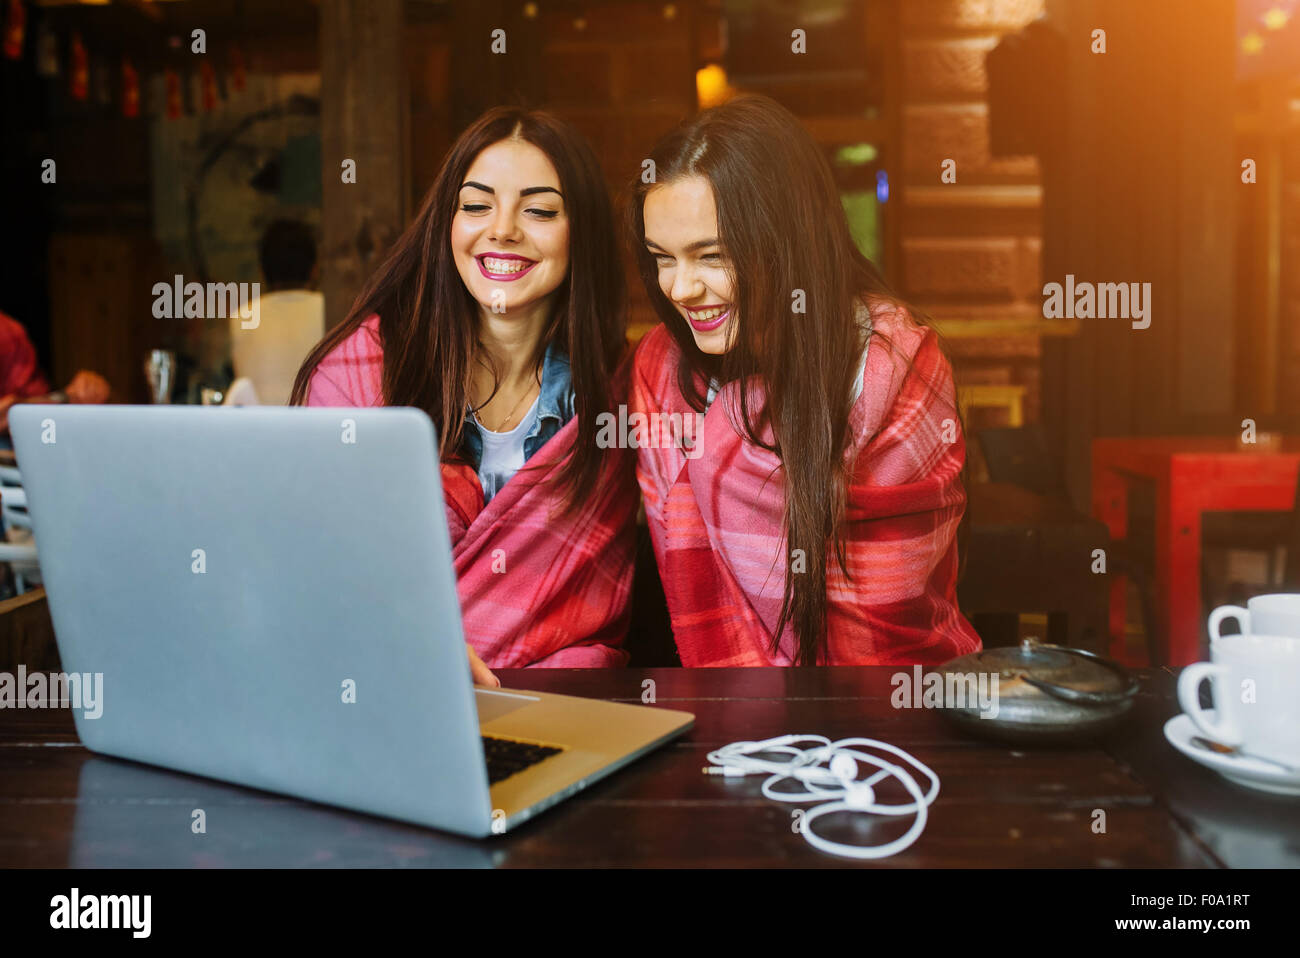 two girls watching something in laptop Stock Photo